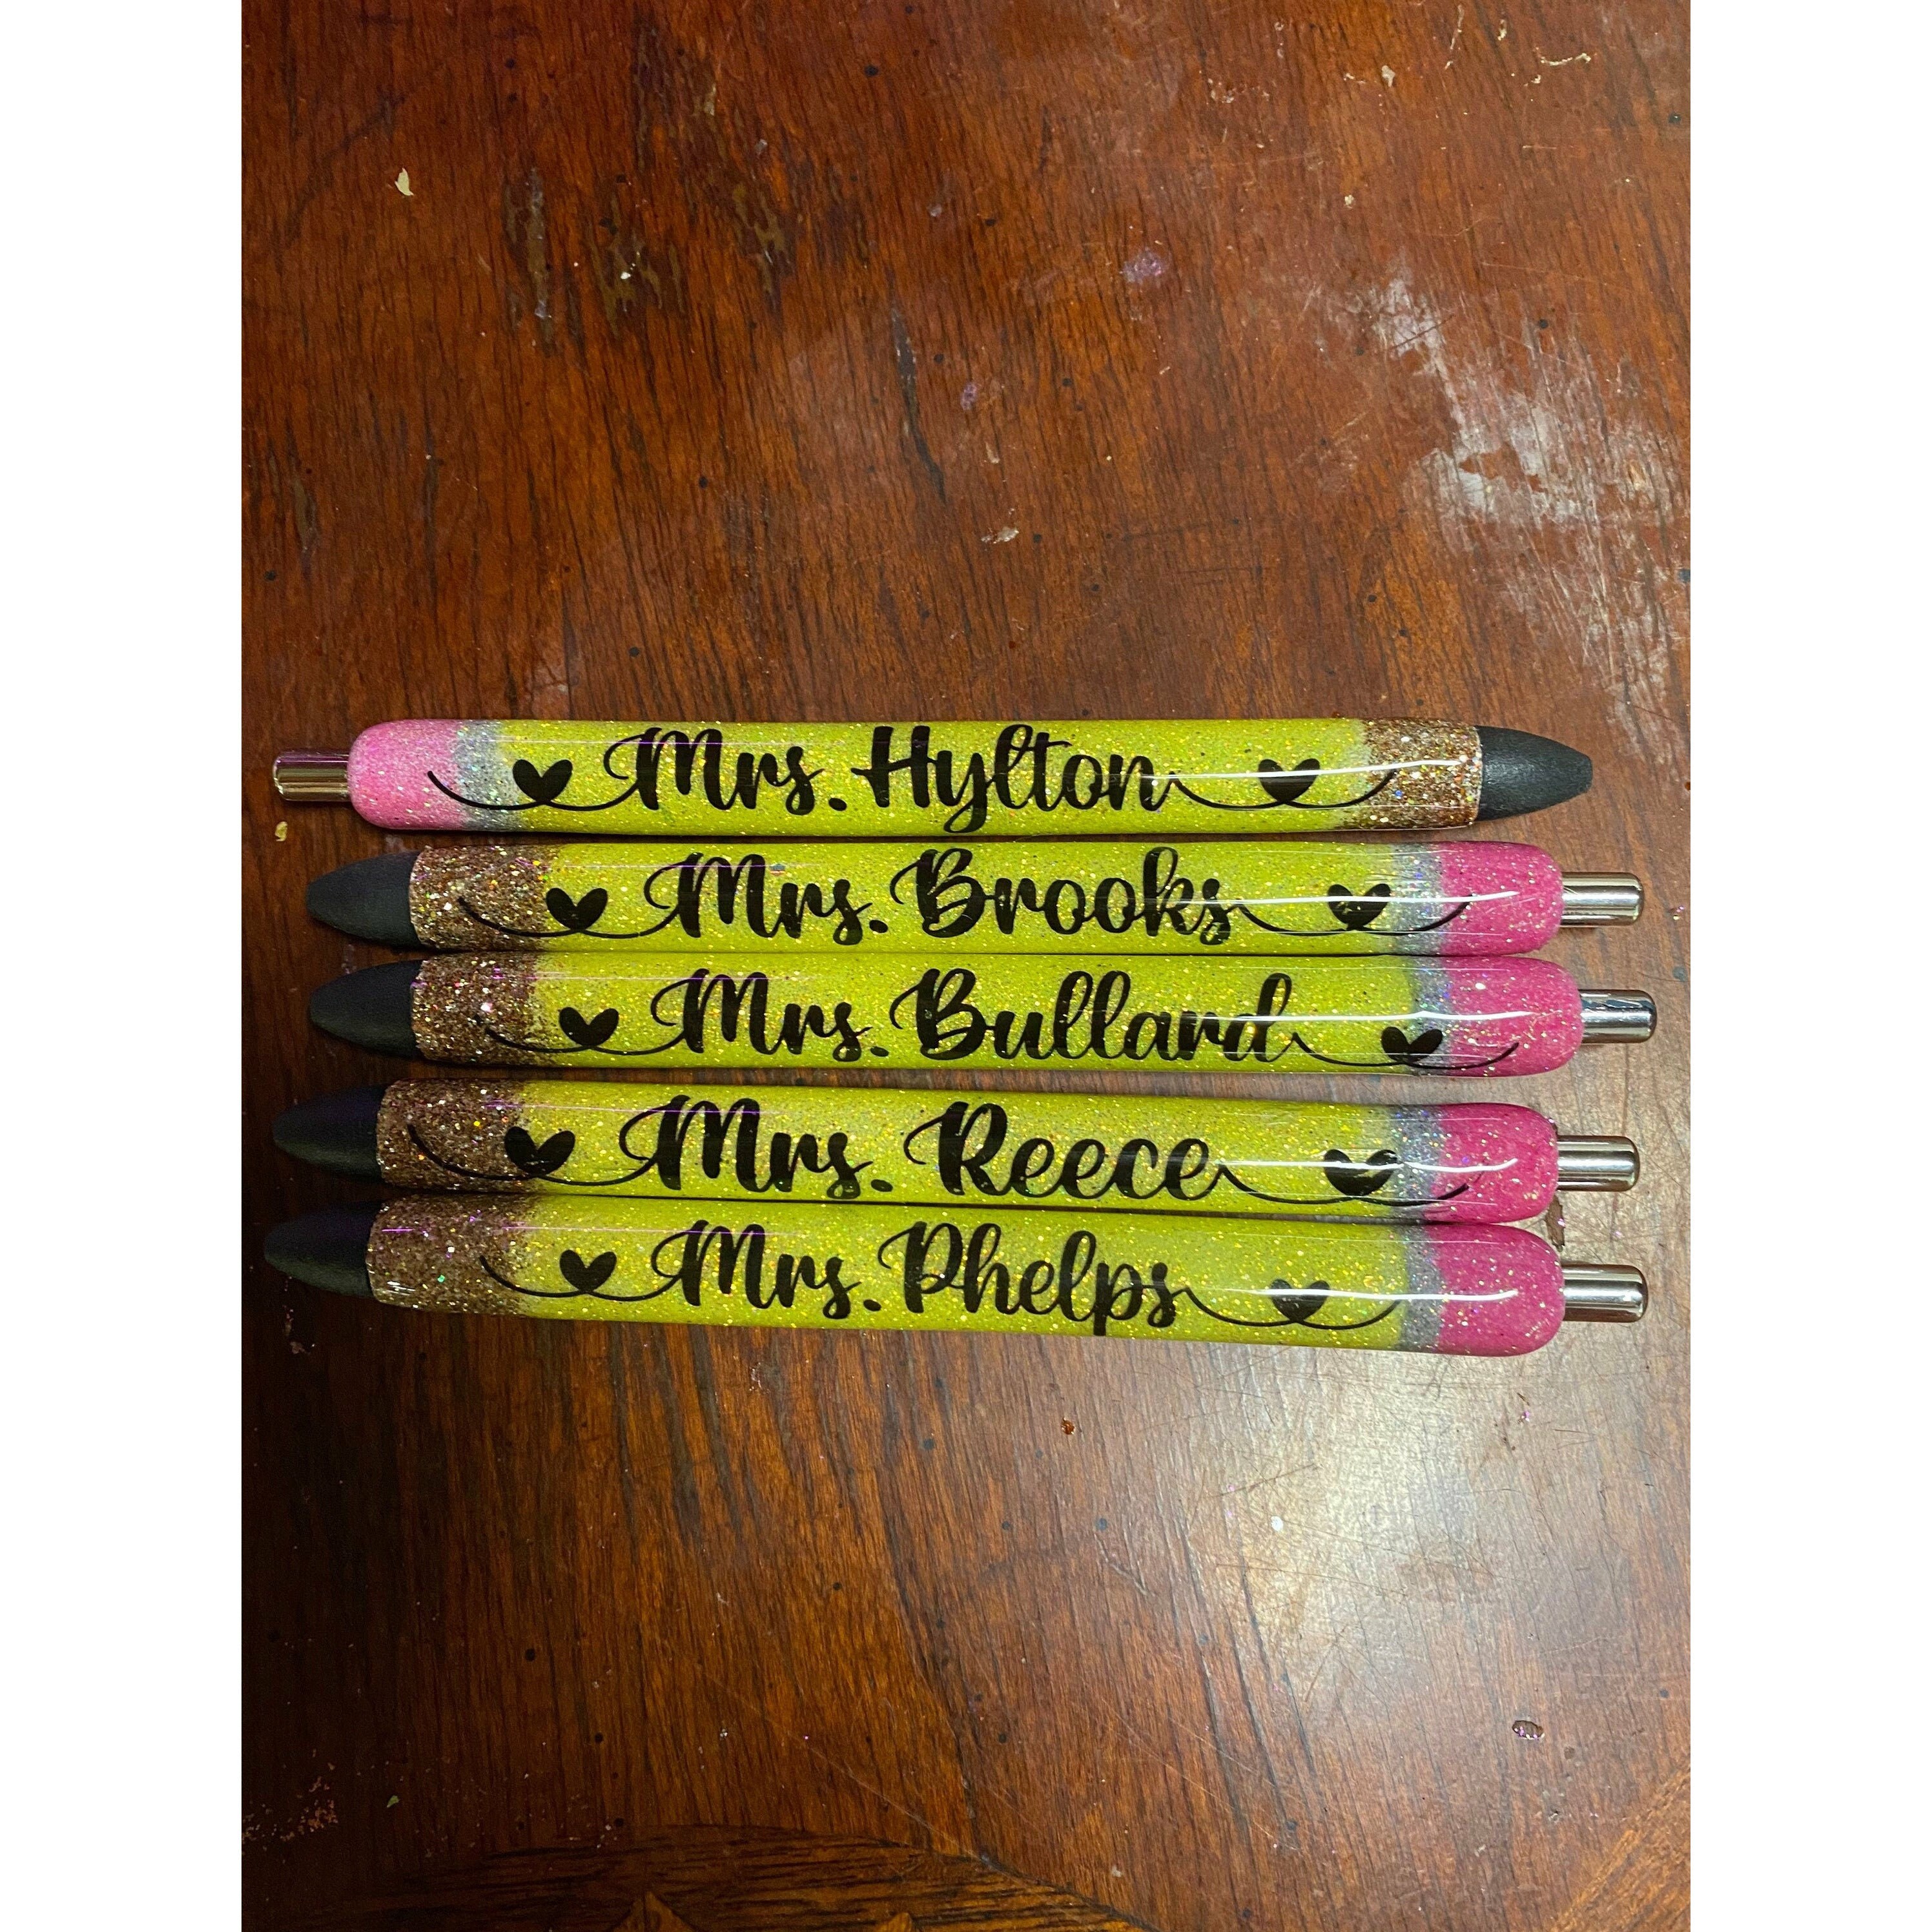  Flair Pens for Teachers Glitter Pens Ballpoint Pen